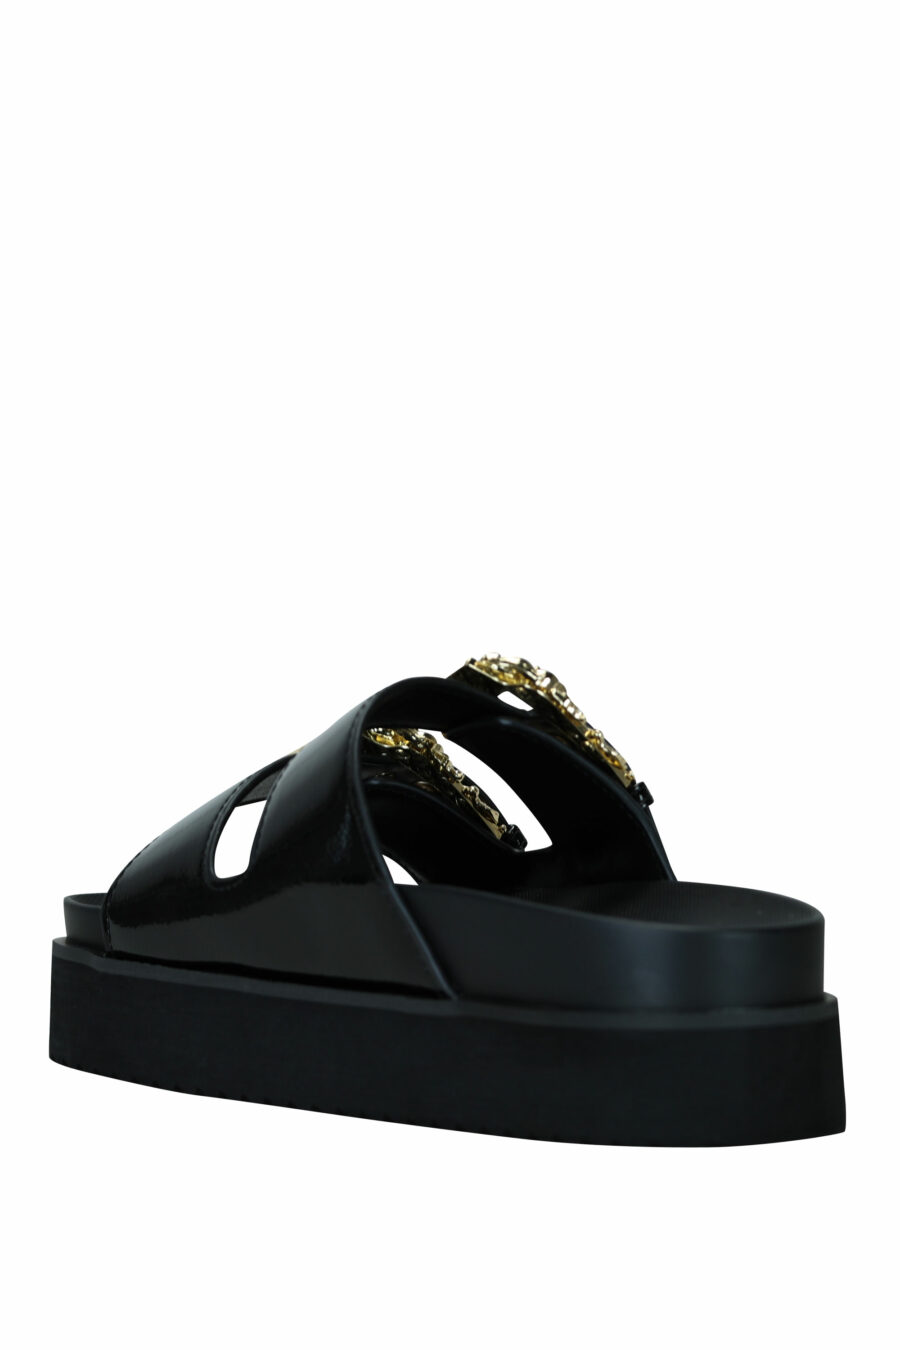 Sandales noires avec double boucle baroque dorée - 8052019607253 4